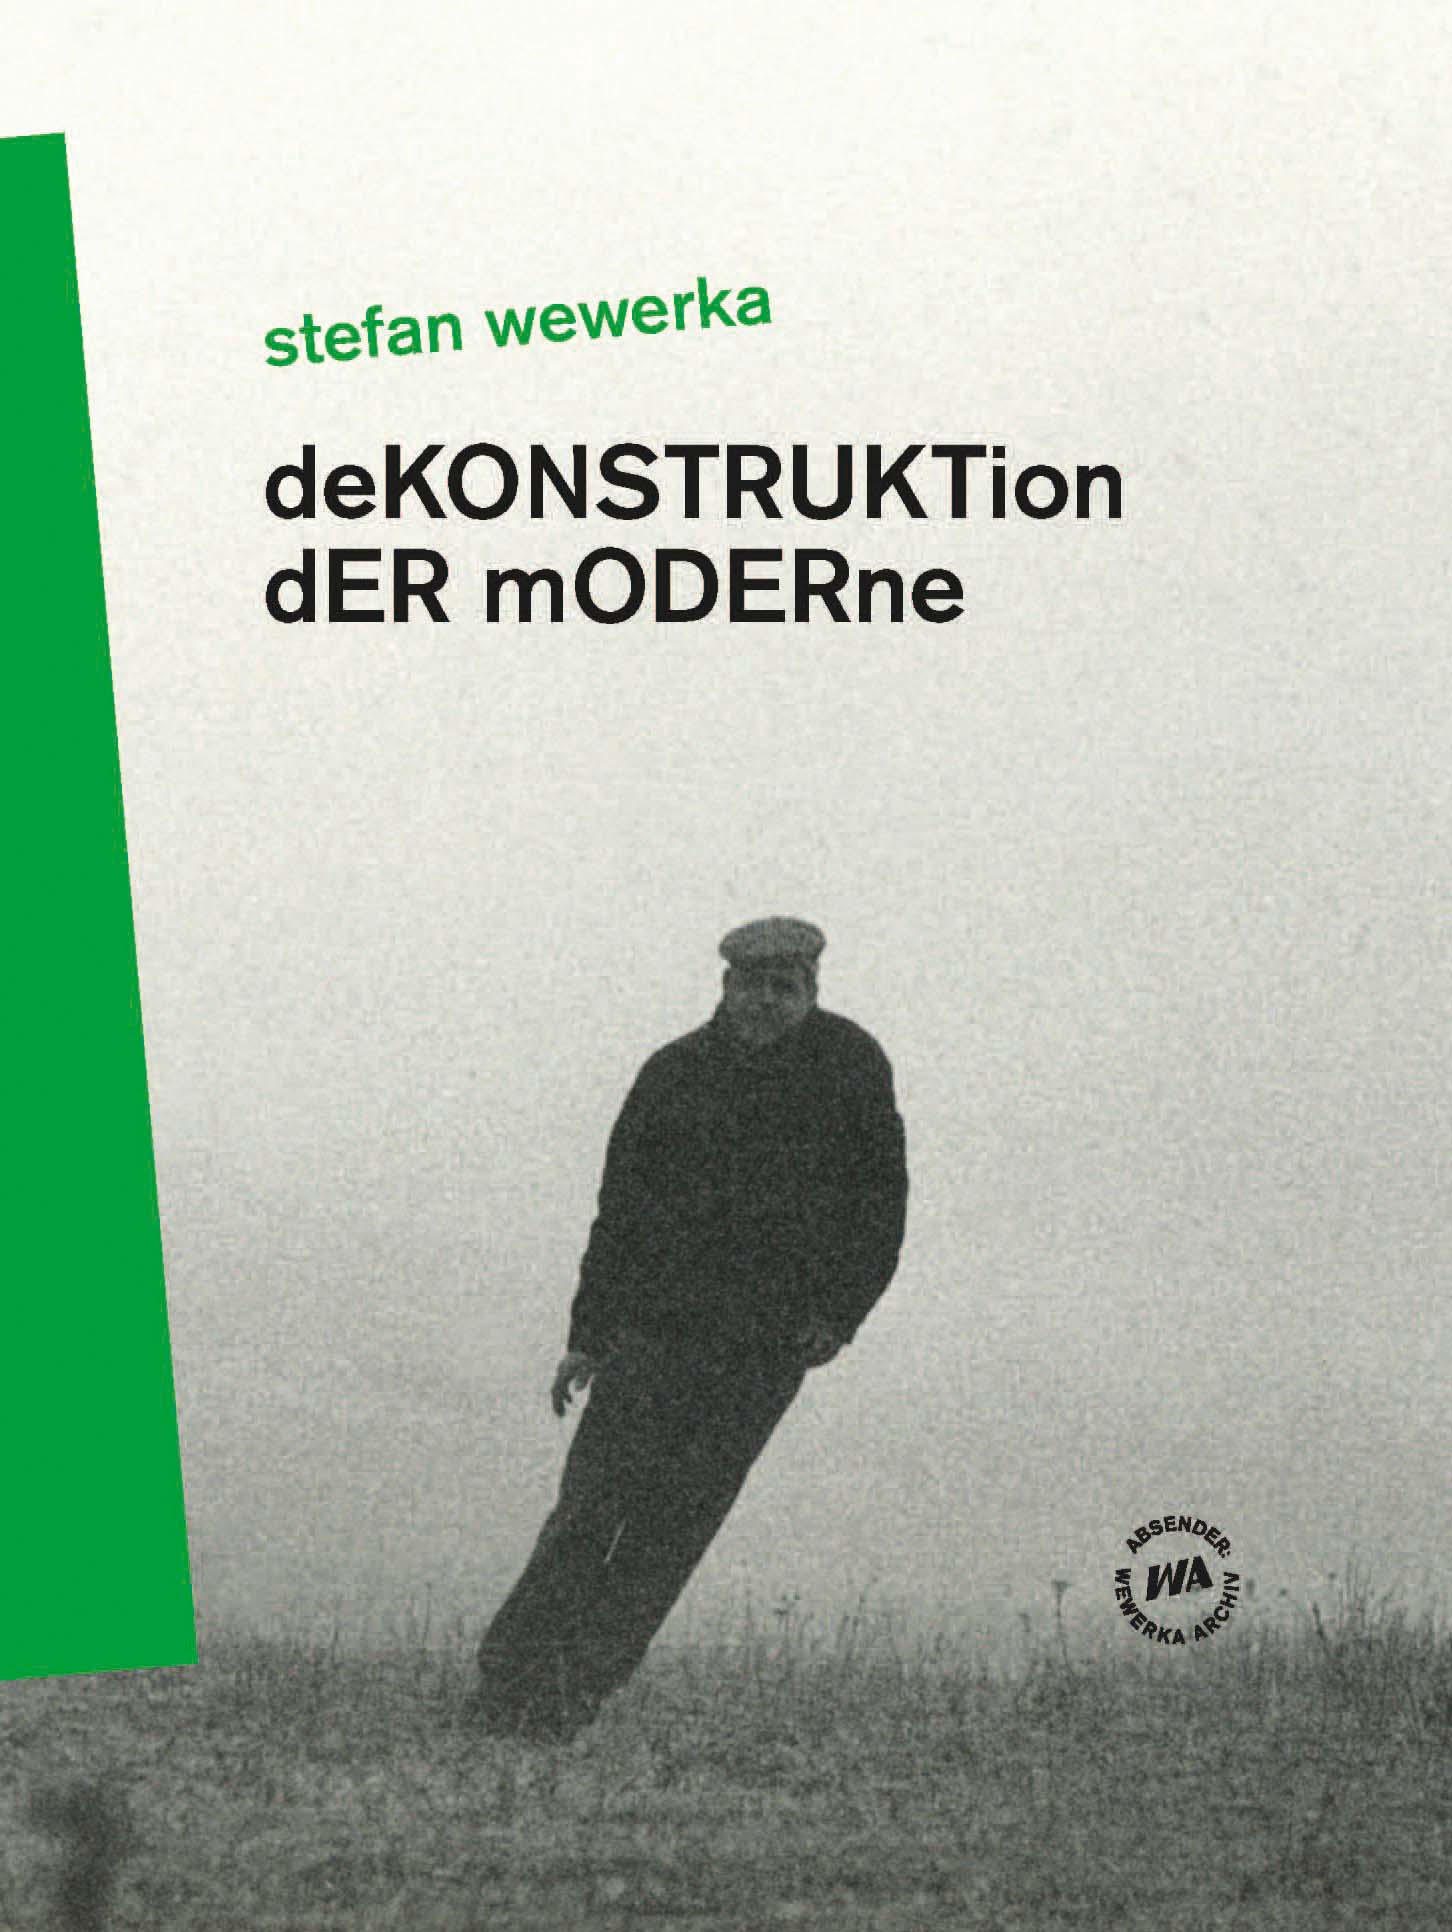 Buchpräsentation: Stefan Wewerka. Dekonstruktion der Moderne